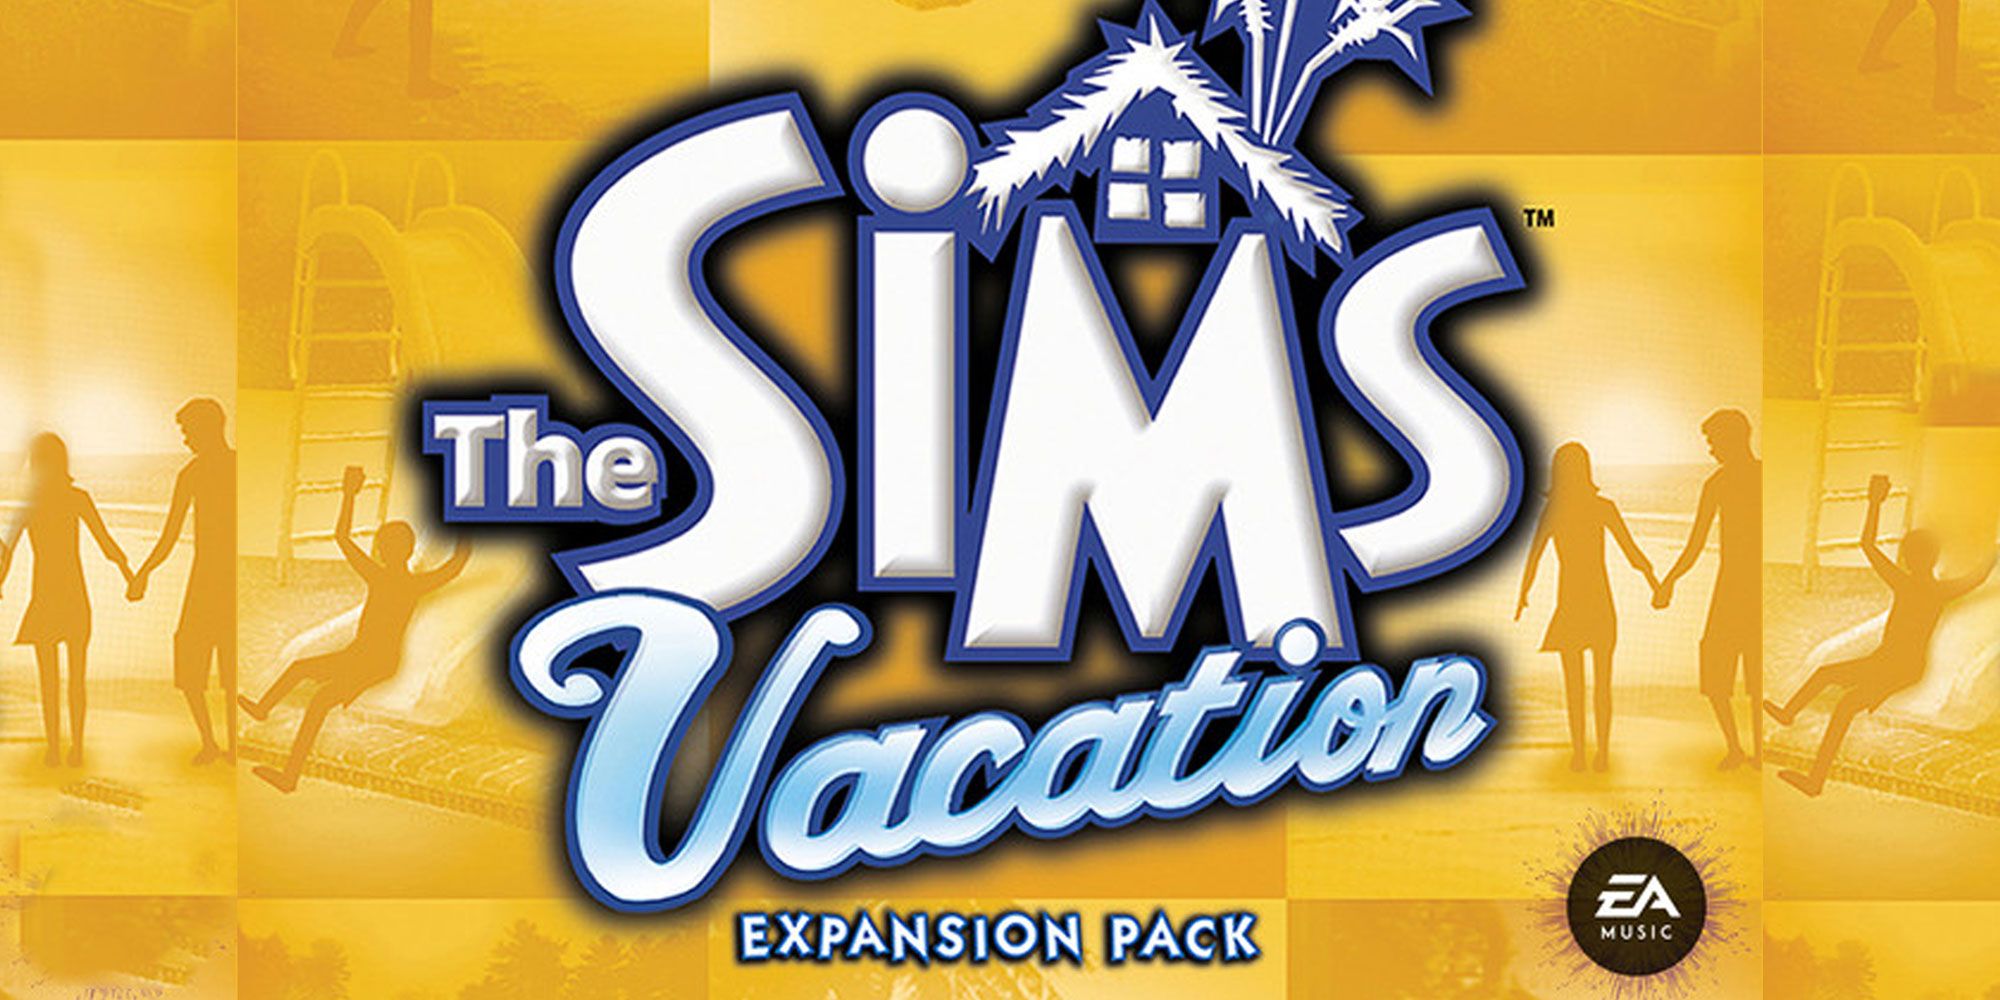 Sims Vacation